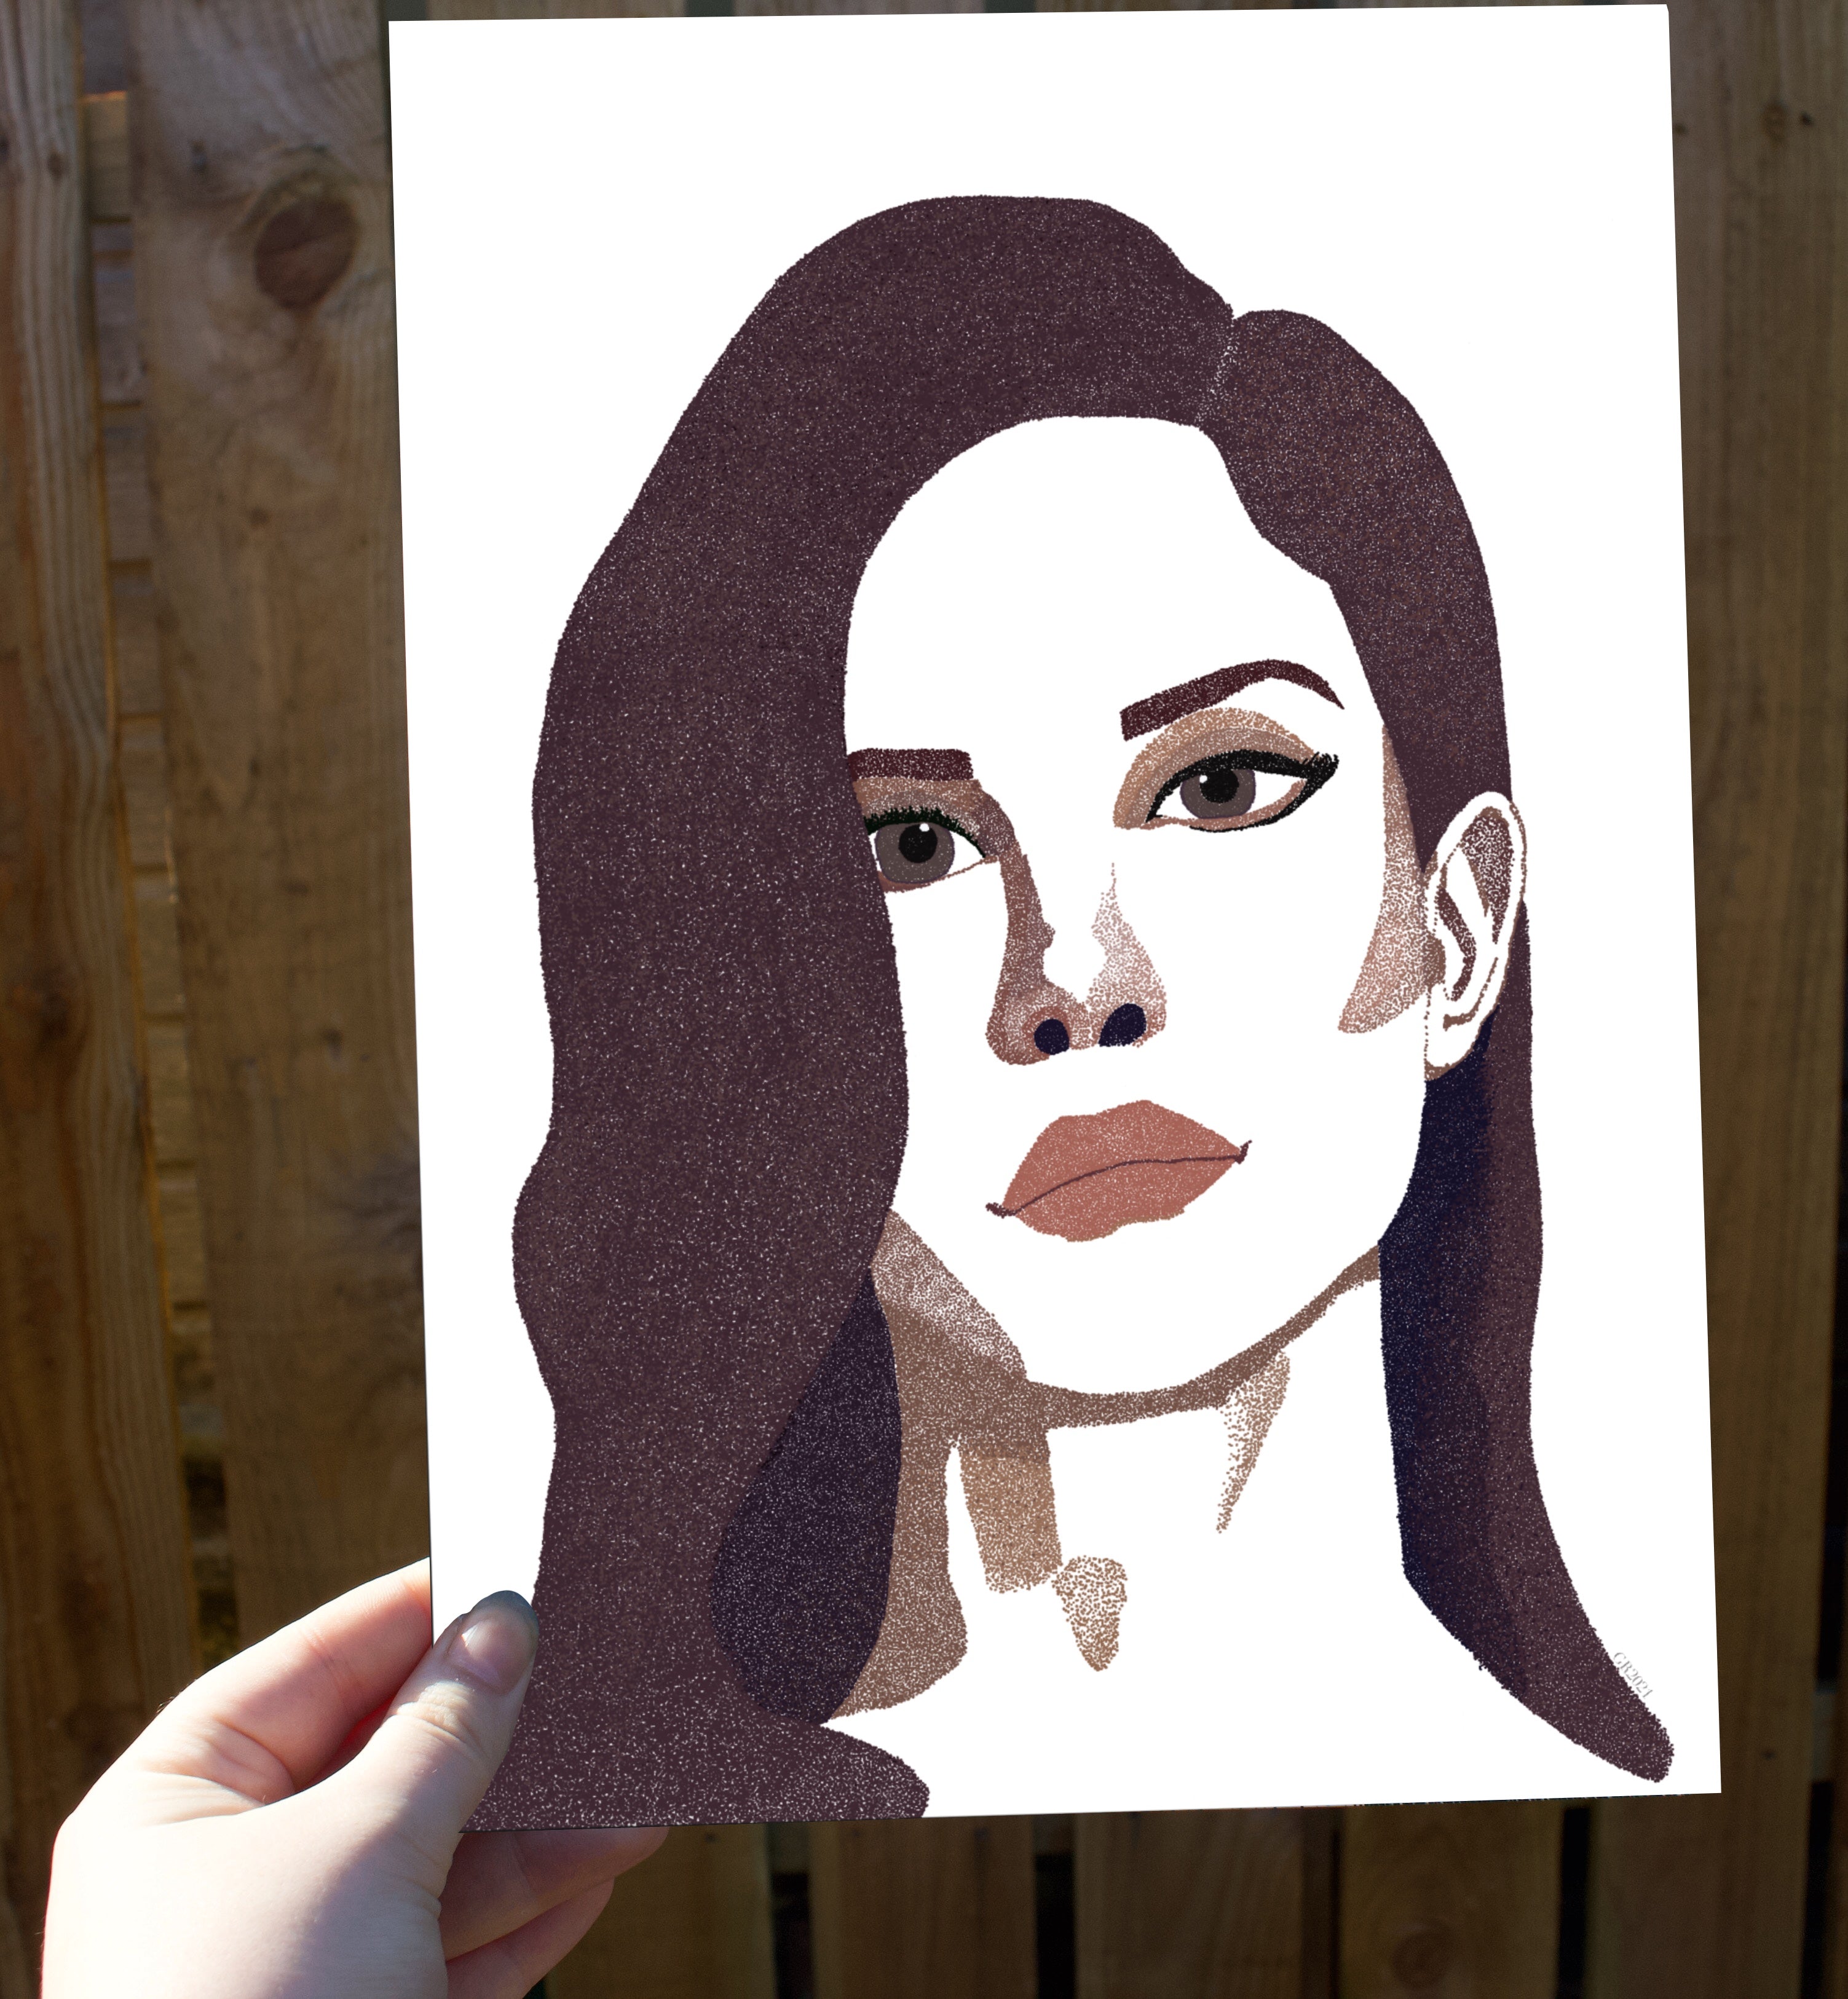 Lana Del Rey Fan Art Print